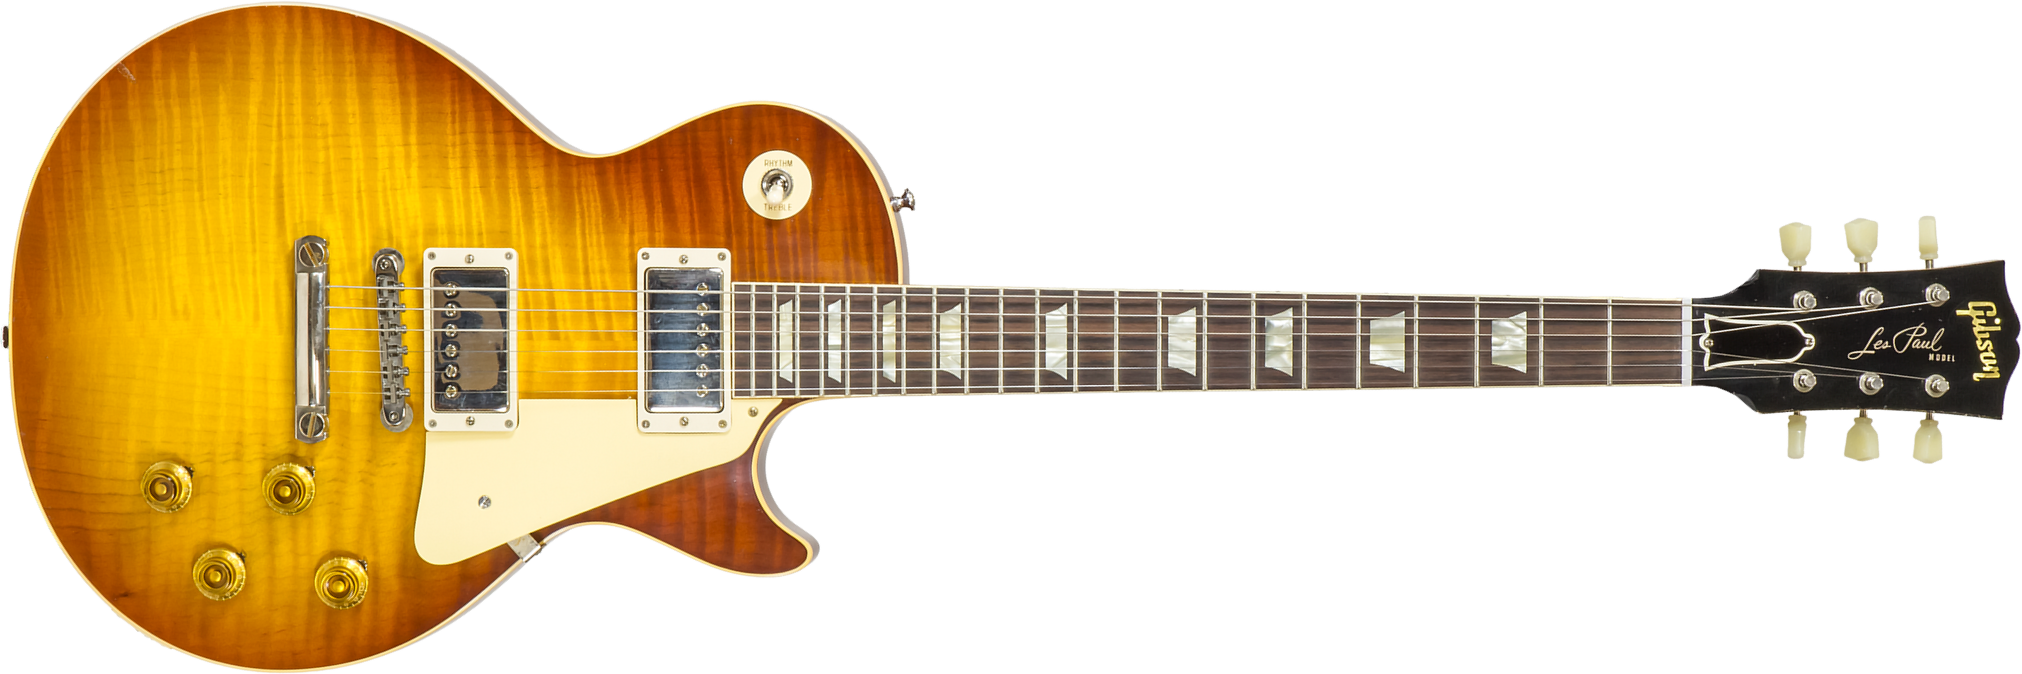 Gibson Custom Shop M2m Les Paul Standard 1959 2h Ht Rw #933187 - Murphy Lab Light Aged Slow Ice Tea Fade - Guitarra eléctrica de corte único. - Main p